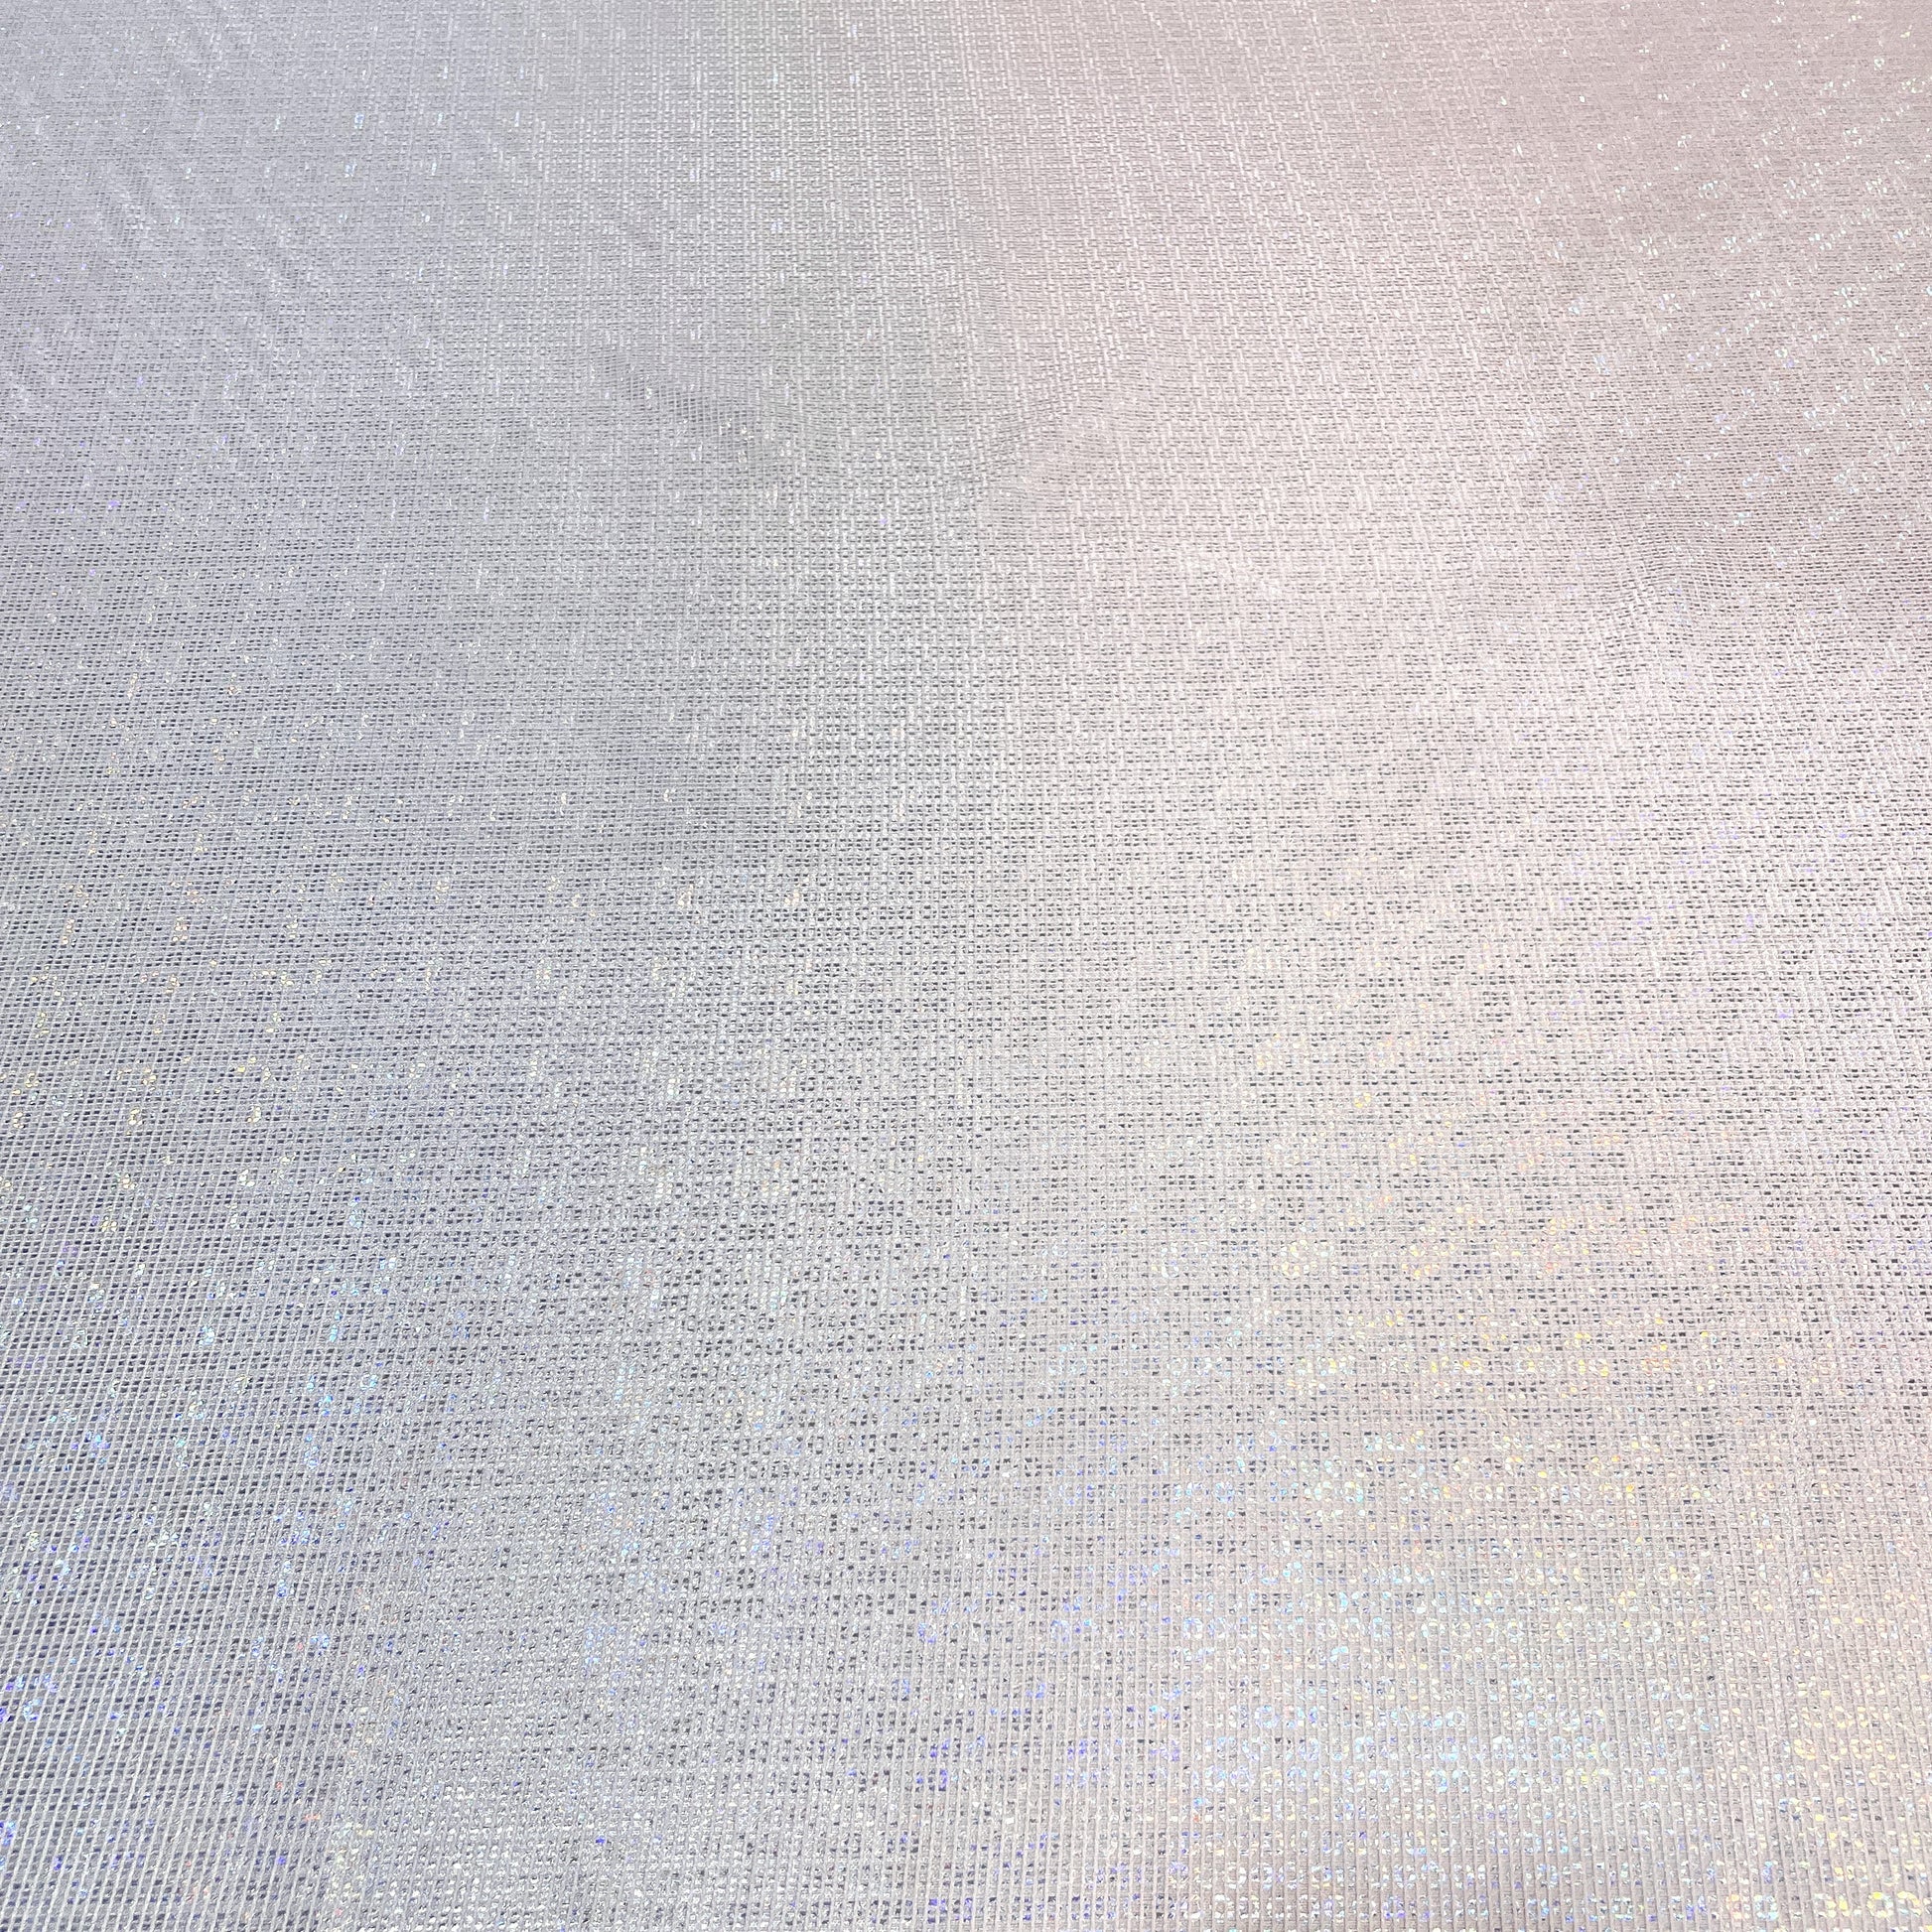 Premium Lavender Gold Lurex Embossed Satin Fabric